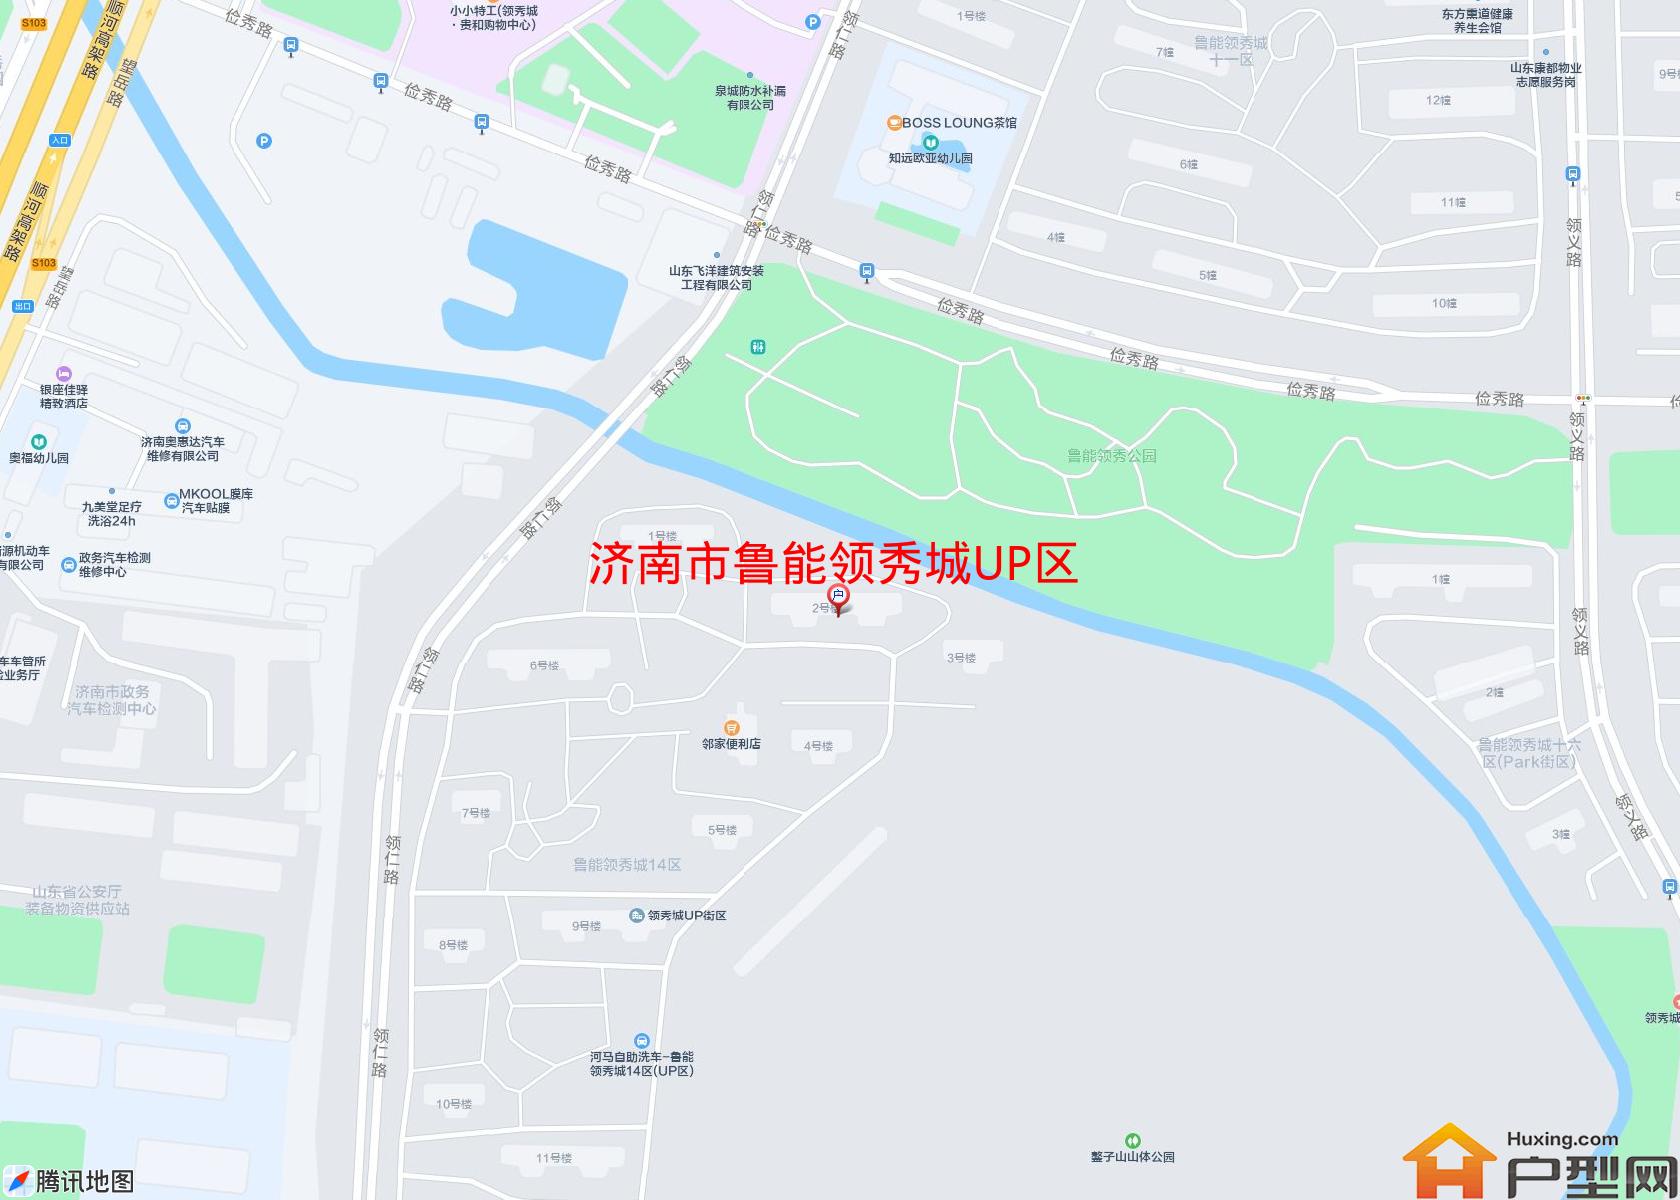 鲁能领秀城UP区小区 - 户型网